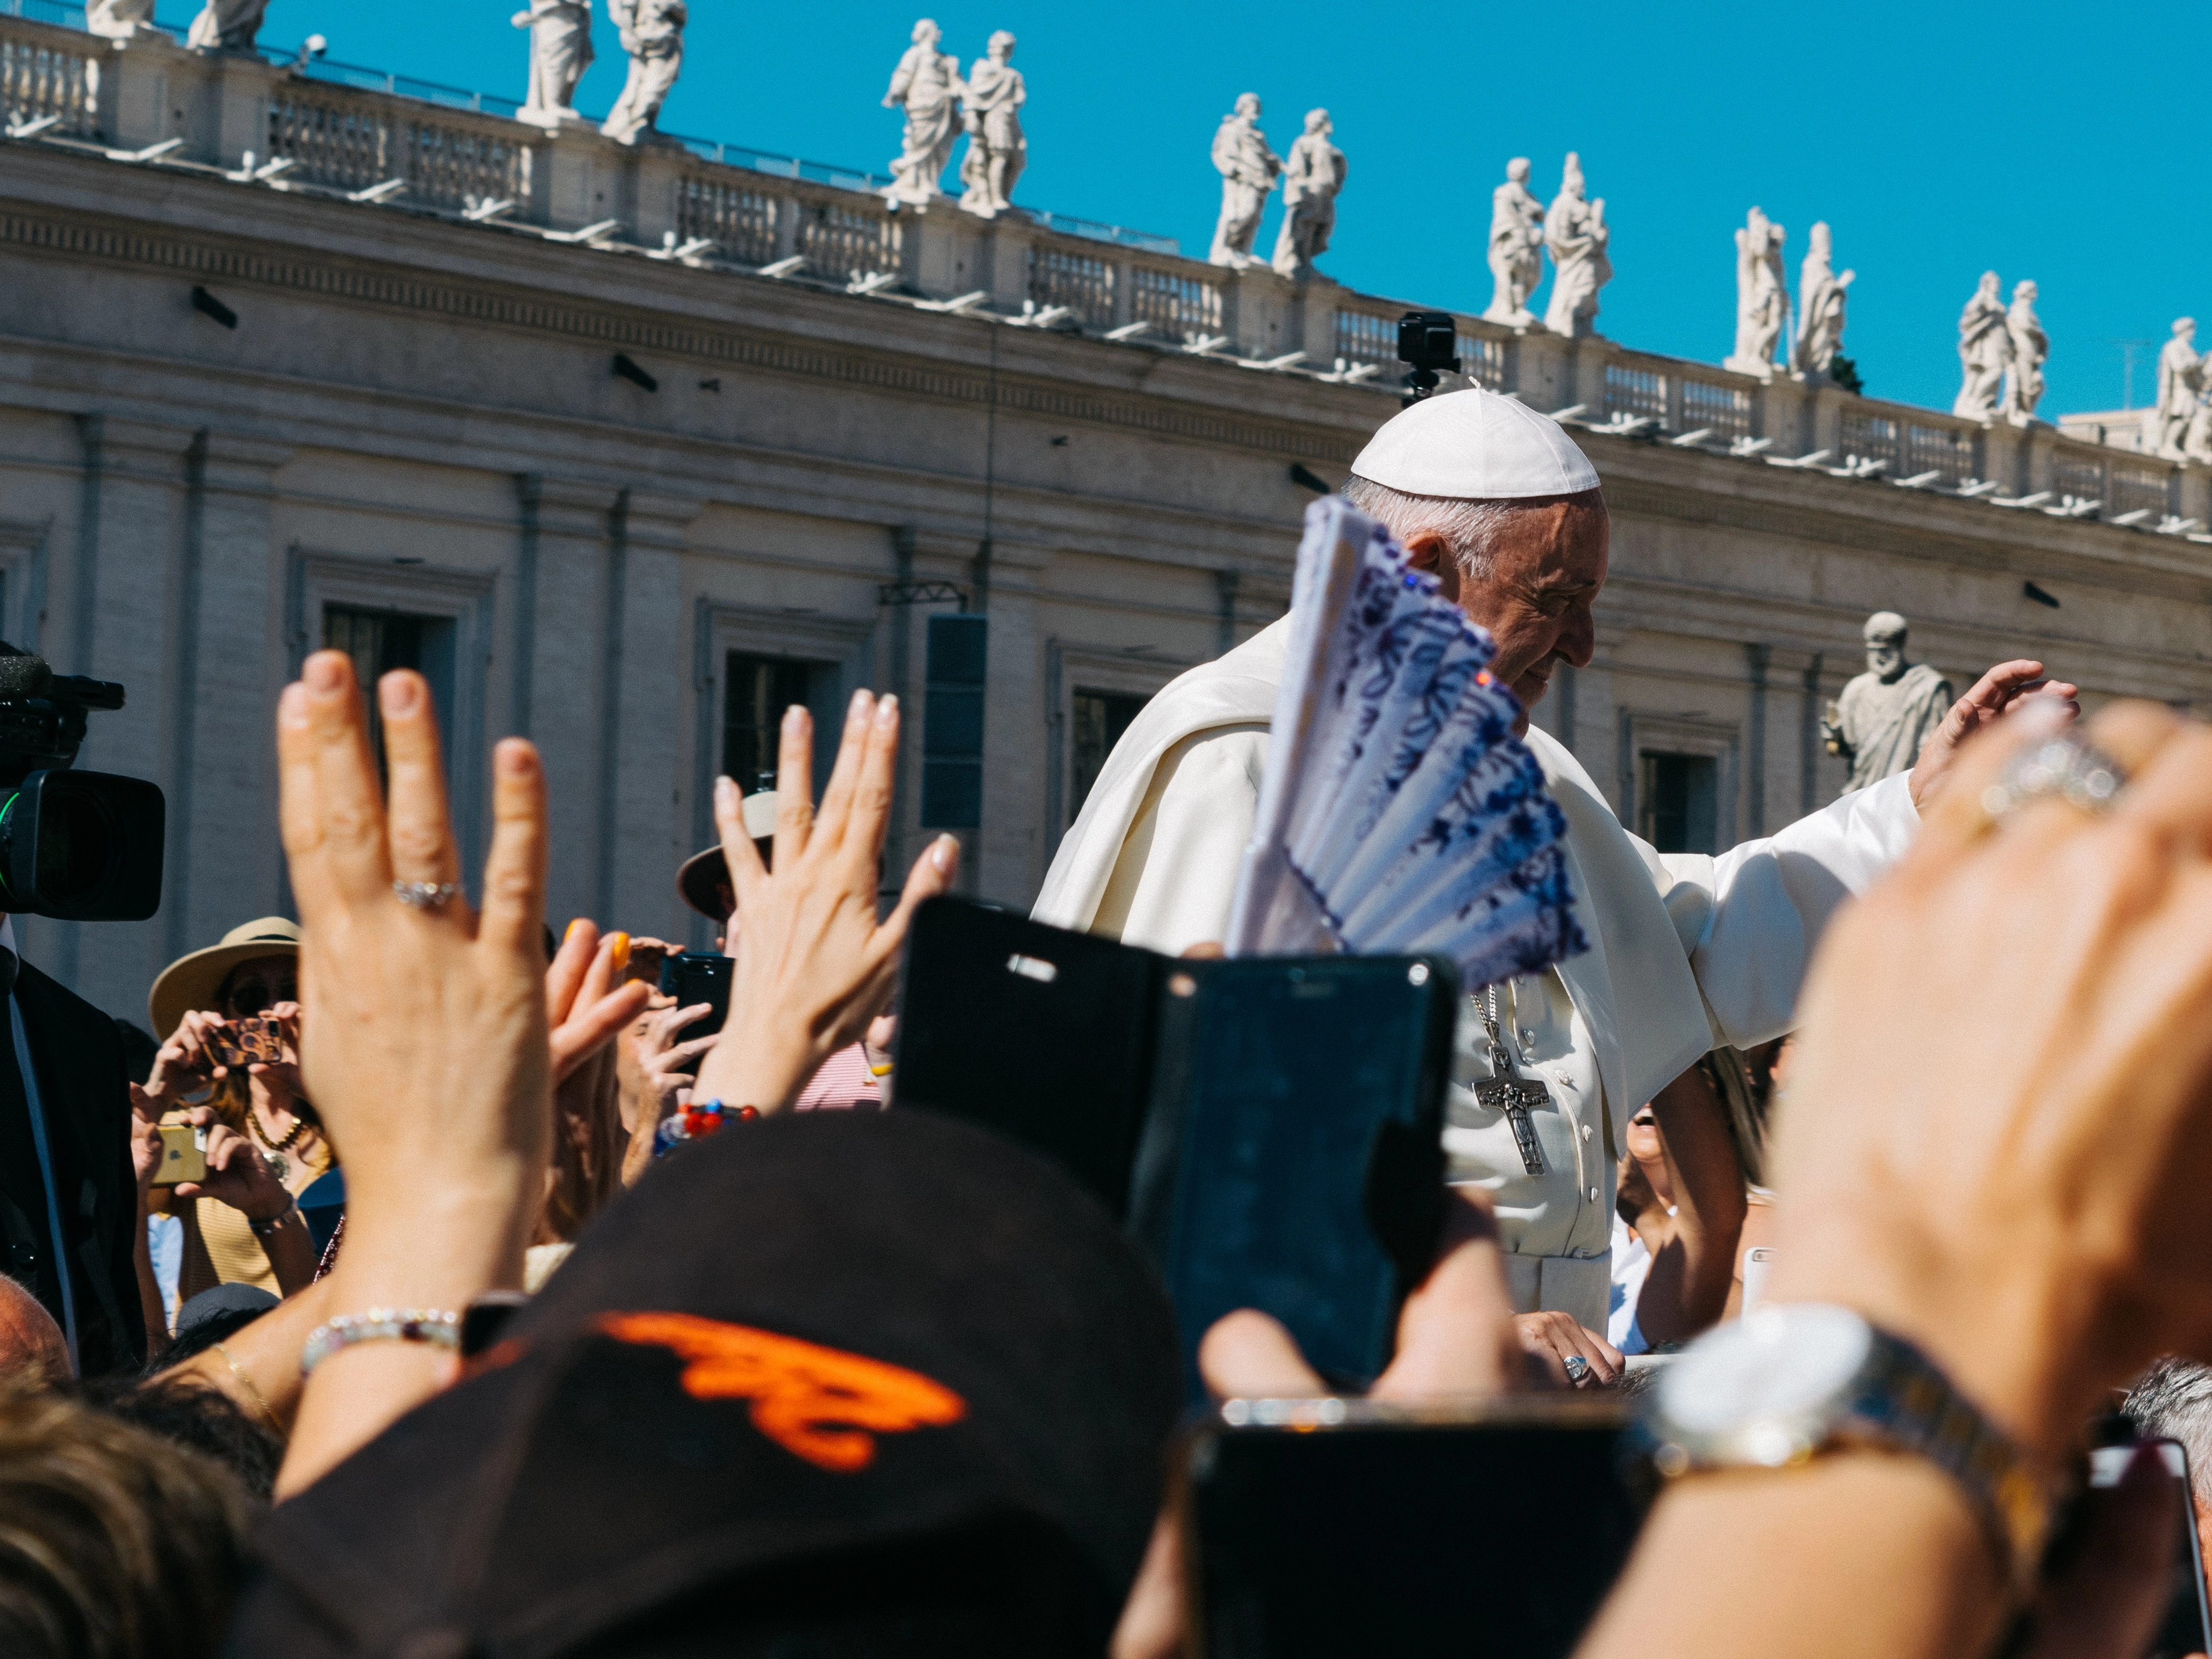 Egyedi miseruha készül Ferenc pápának a budapesti látogatására 